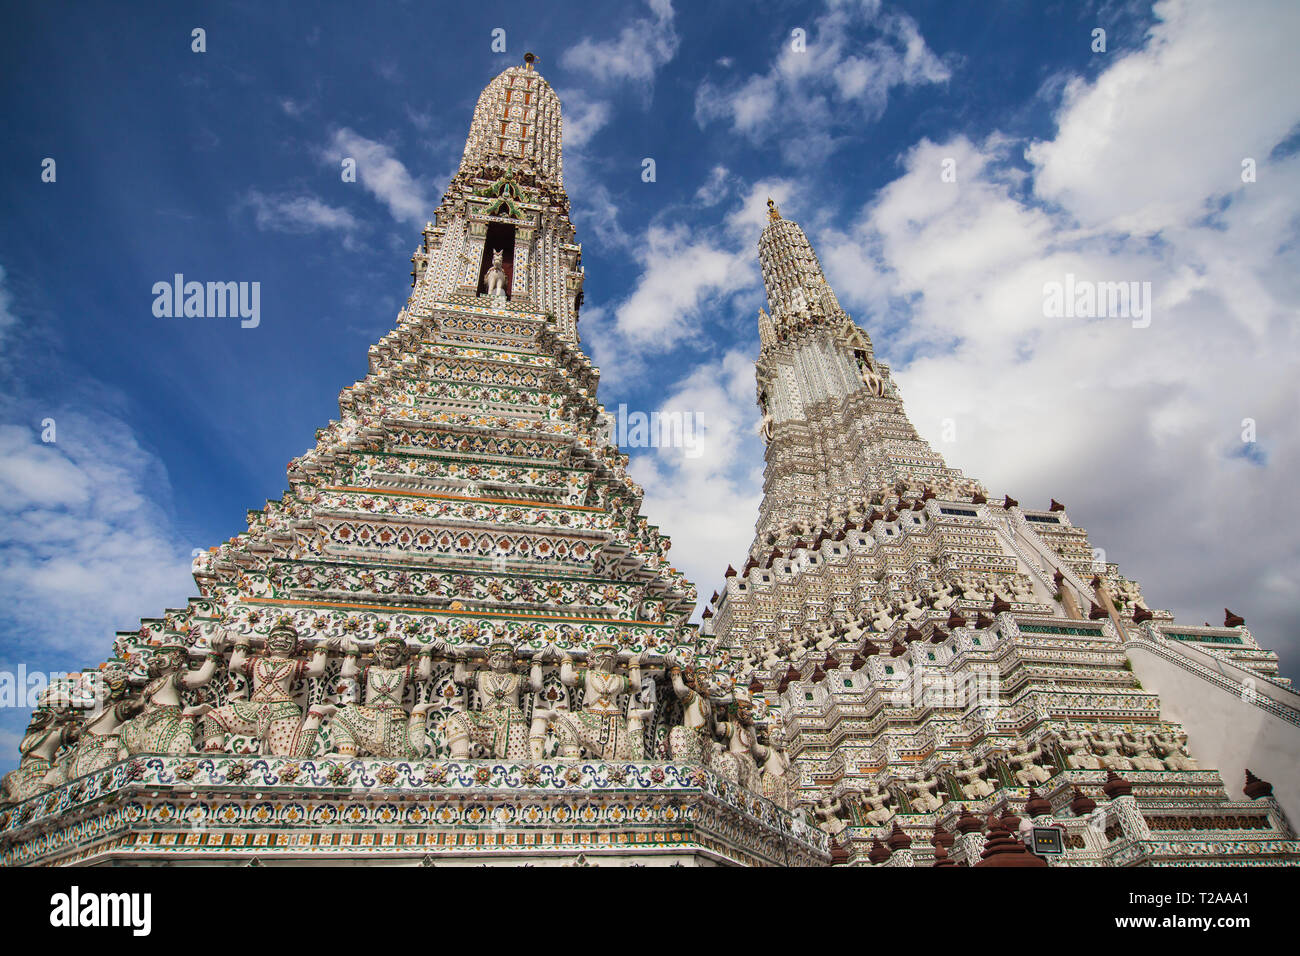 Prangs of Wat Arun in Bangkok, Thailand. Stock Photo